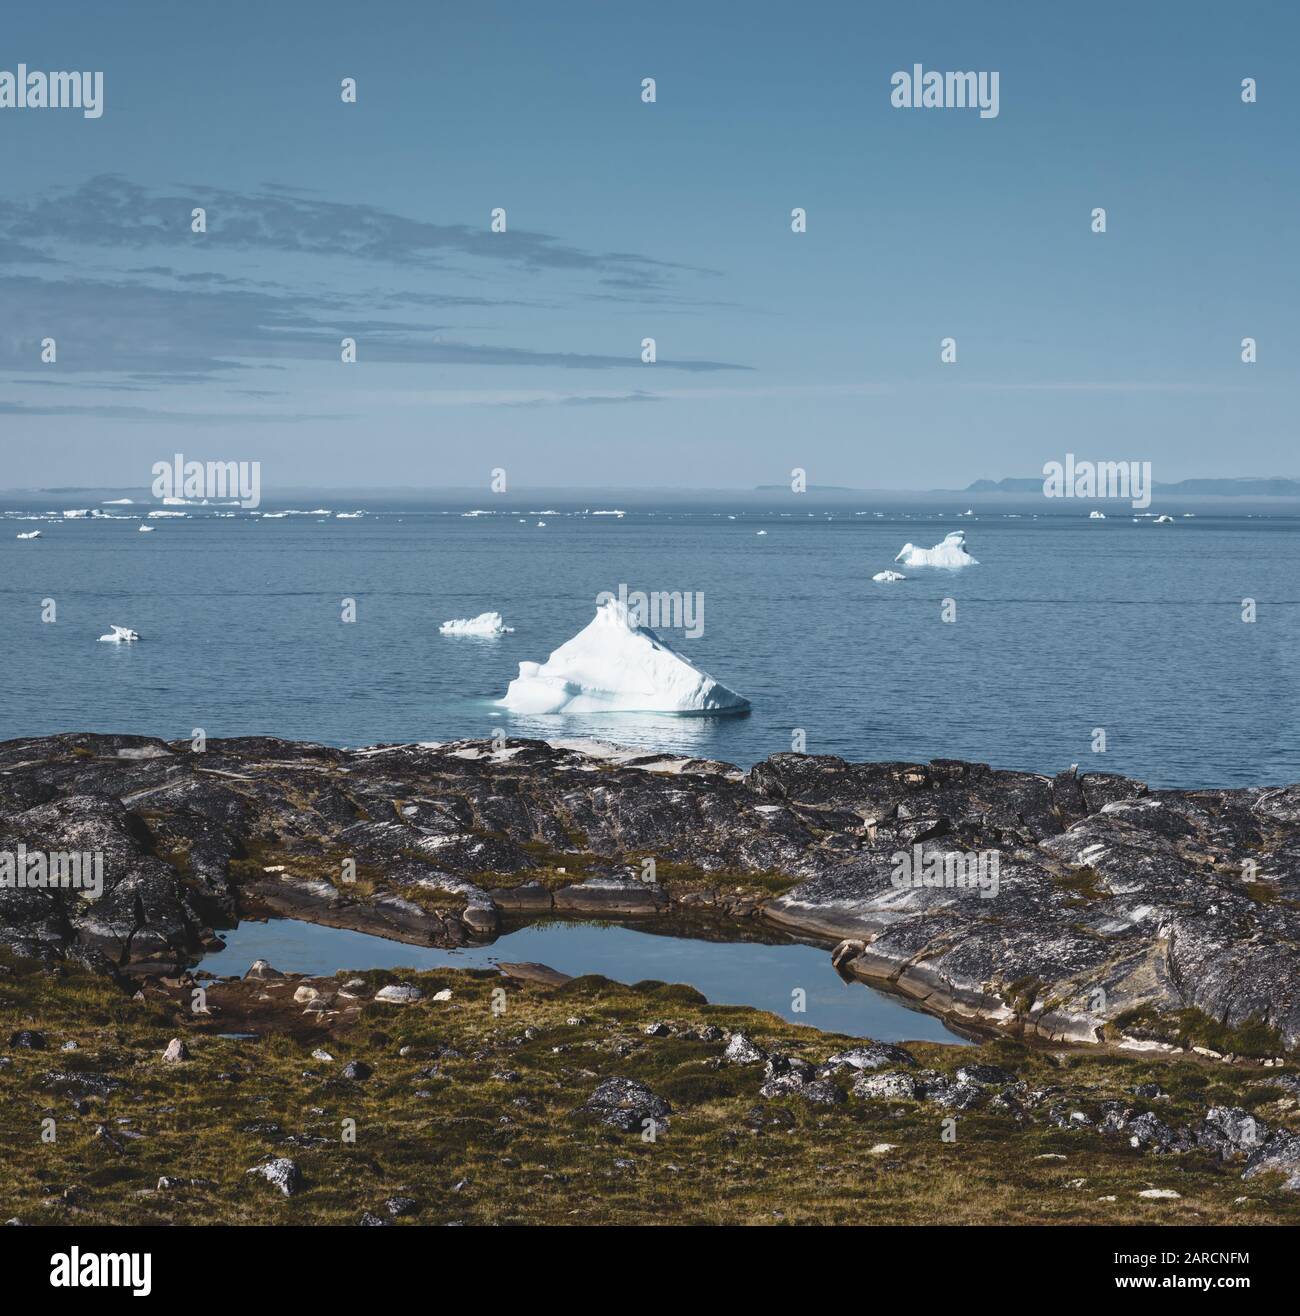 Paysage arcticlandscape magique par l'océan Arctique au Groenland. Icebergs nager dans l'eau. Ciel bleu un jour d'été. Banque D'Images